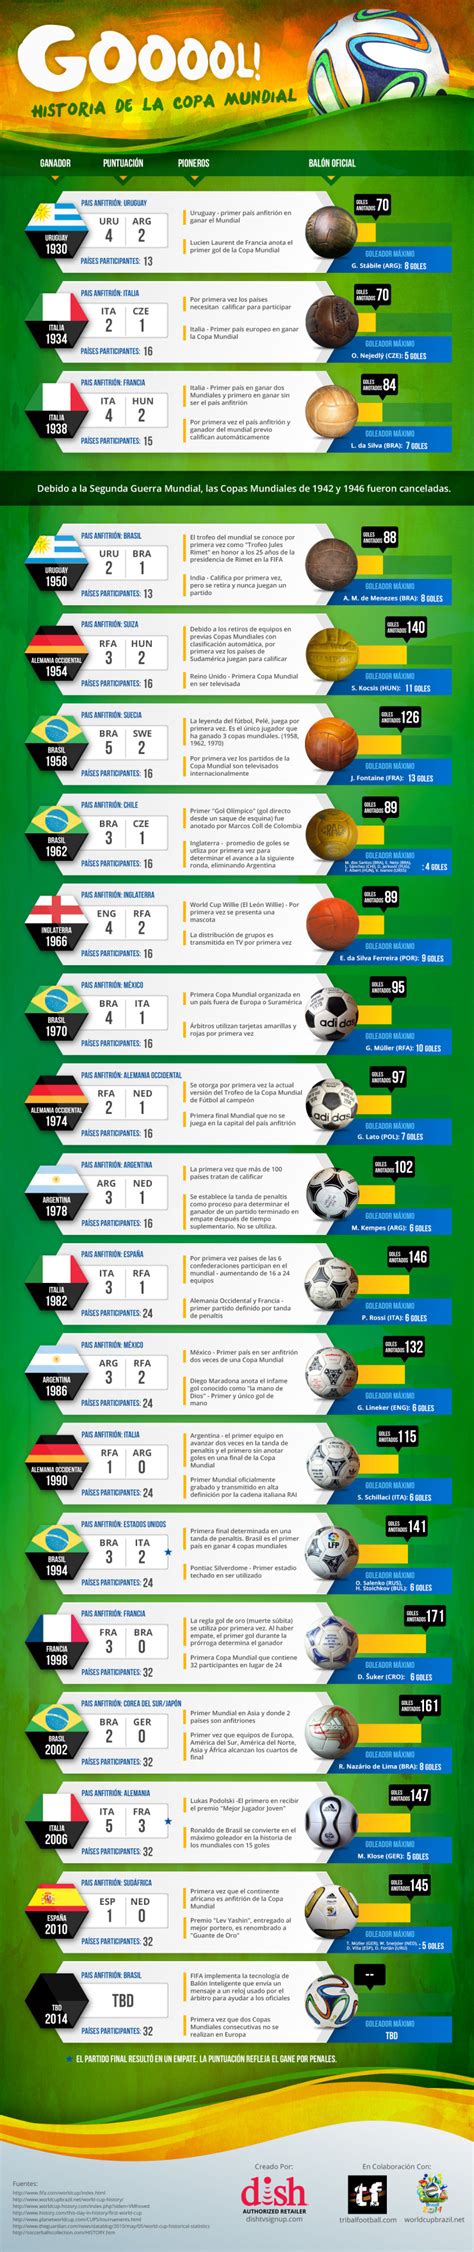 Infografía: La historia de los mundiales de fútbol ...